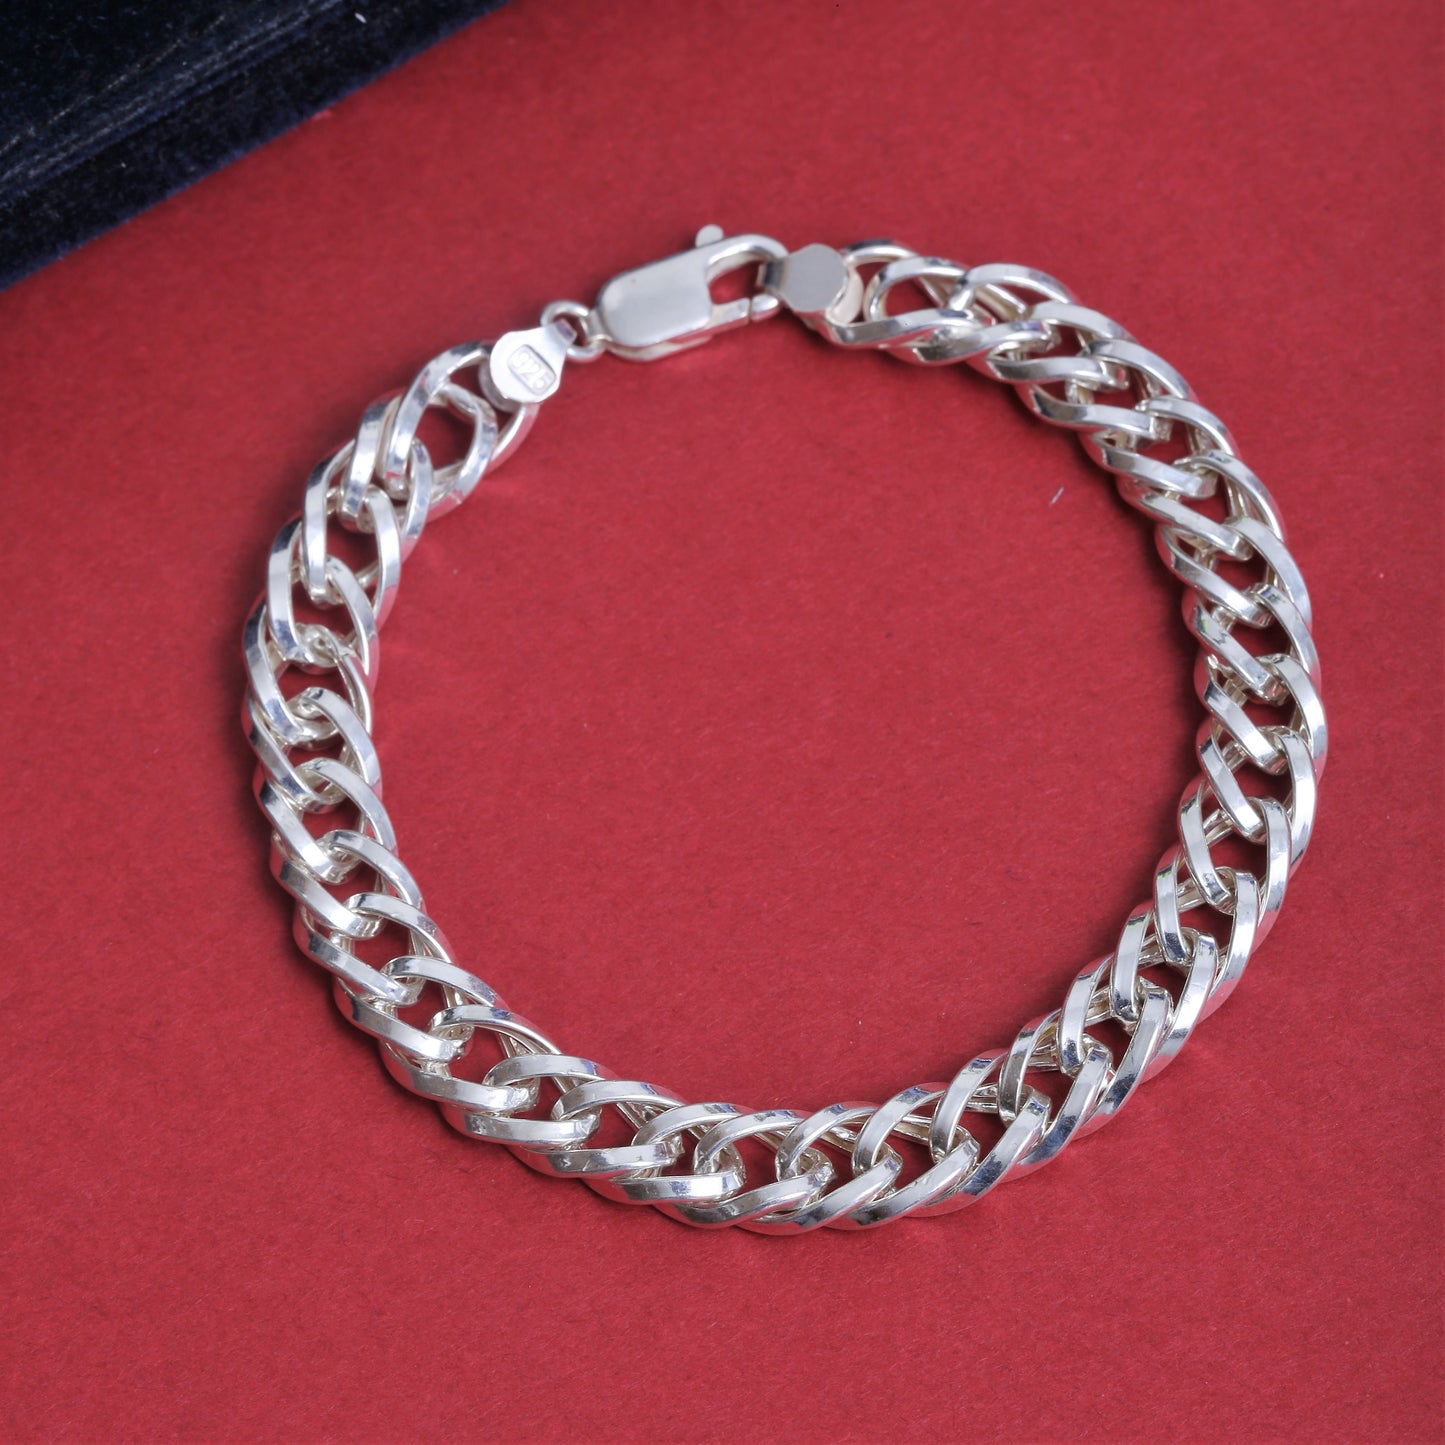 925 Sterling Silver Bracelet - Hollow Cuban Chain Bracelet - Length 8.5 Inches -Handmade Bracelet For Men